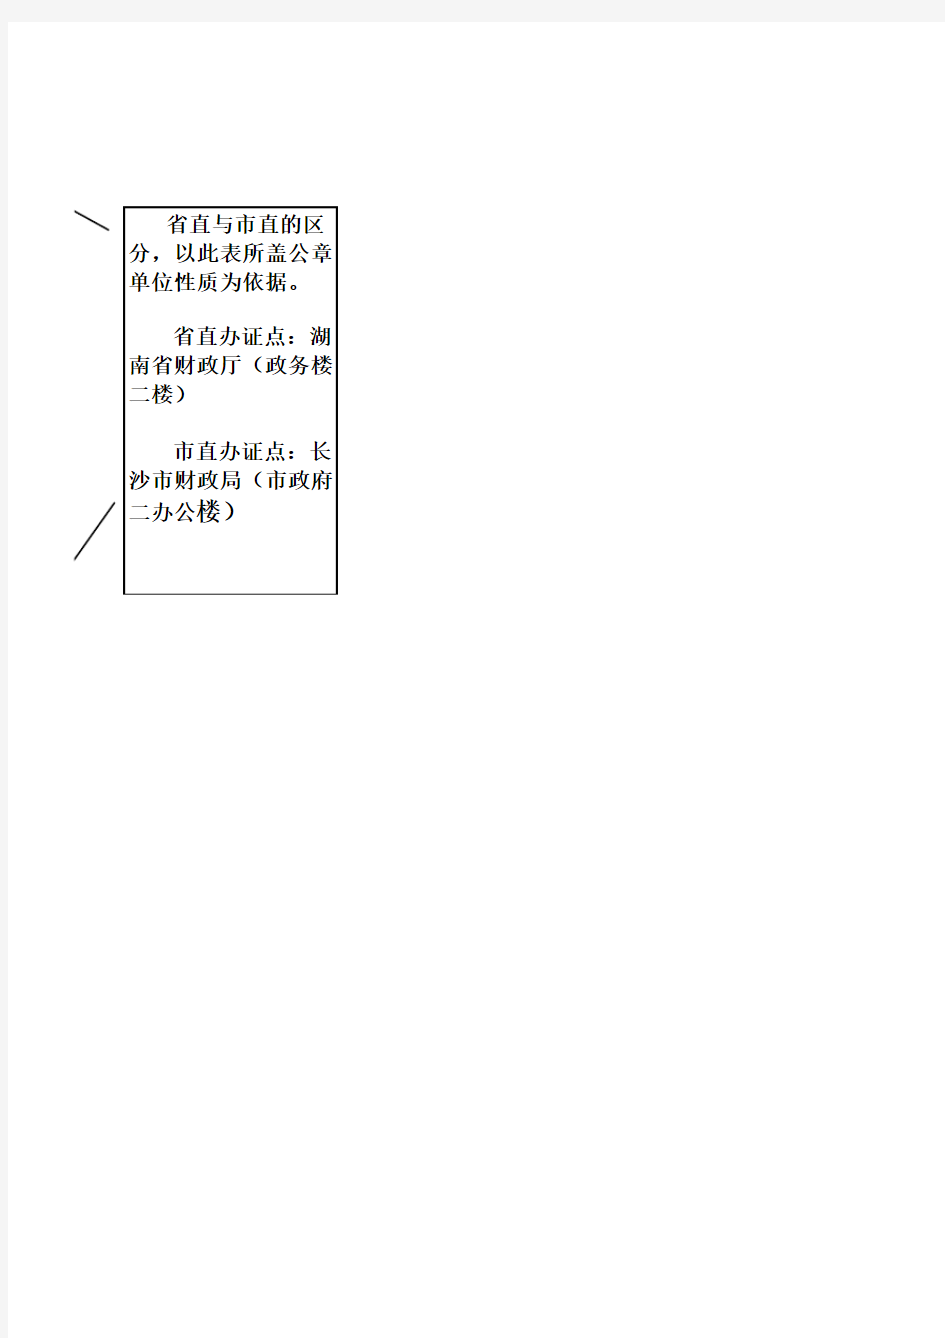 湖南省会计从业资格证书申请表填写模版下载-Sheet1